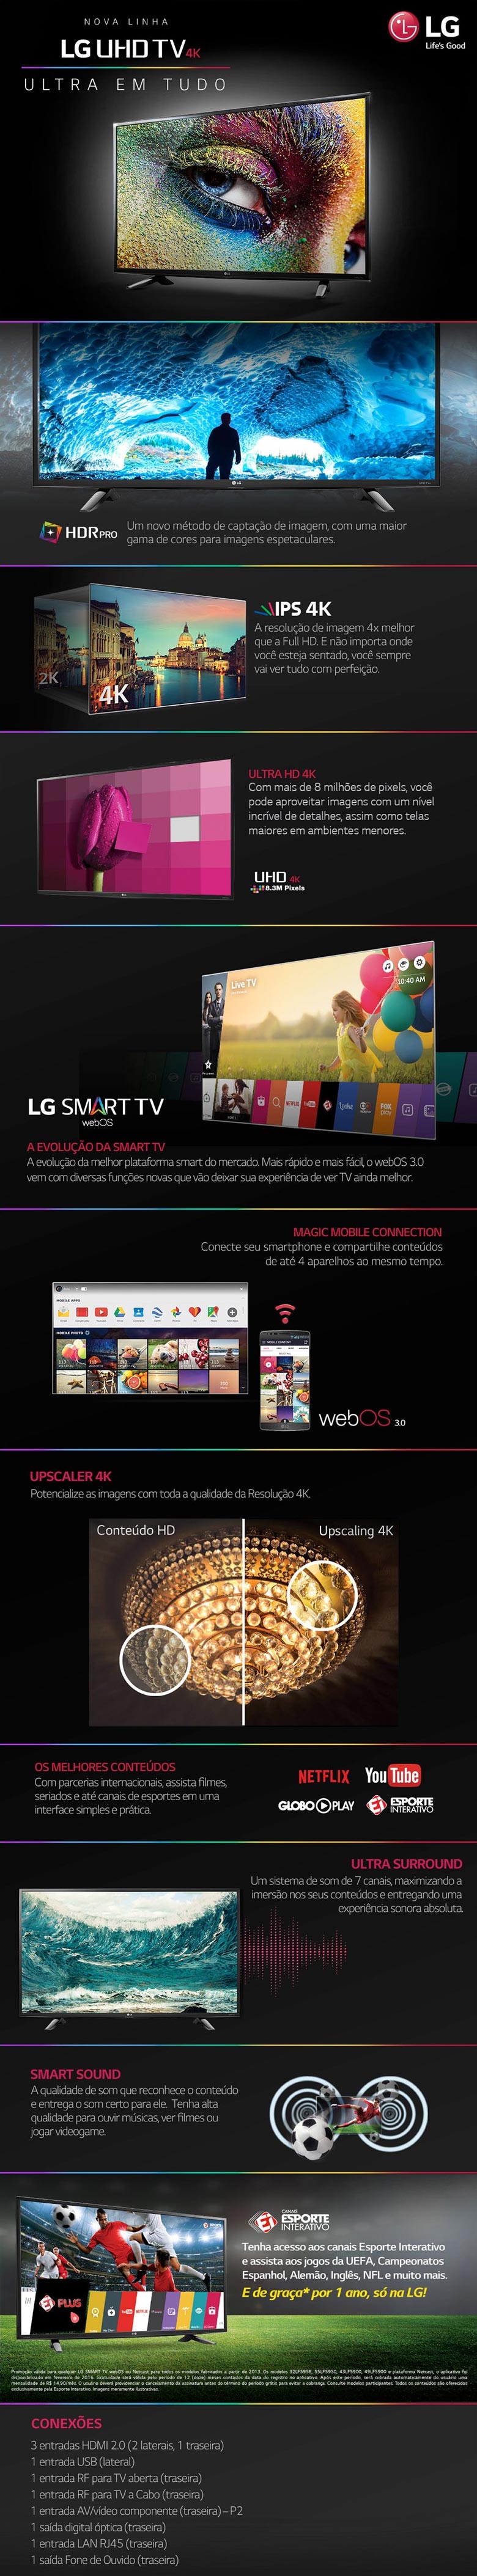 TV 49 4K LG HMDI USB TELA LED ULTRA HD